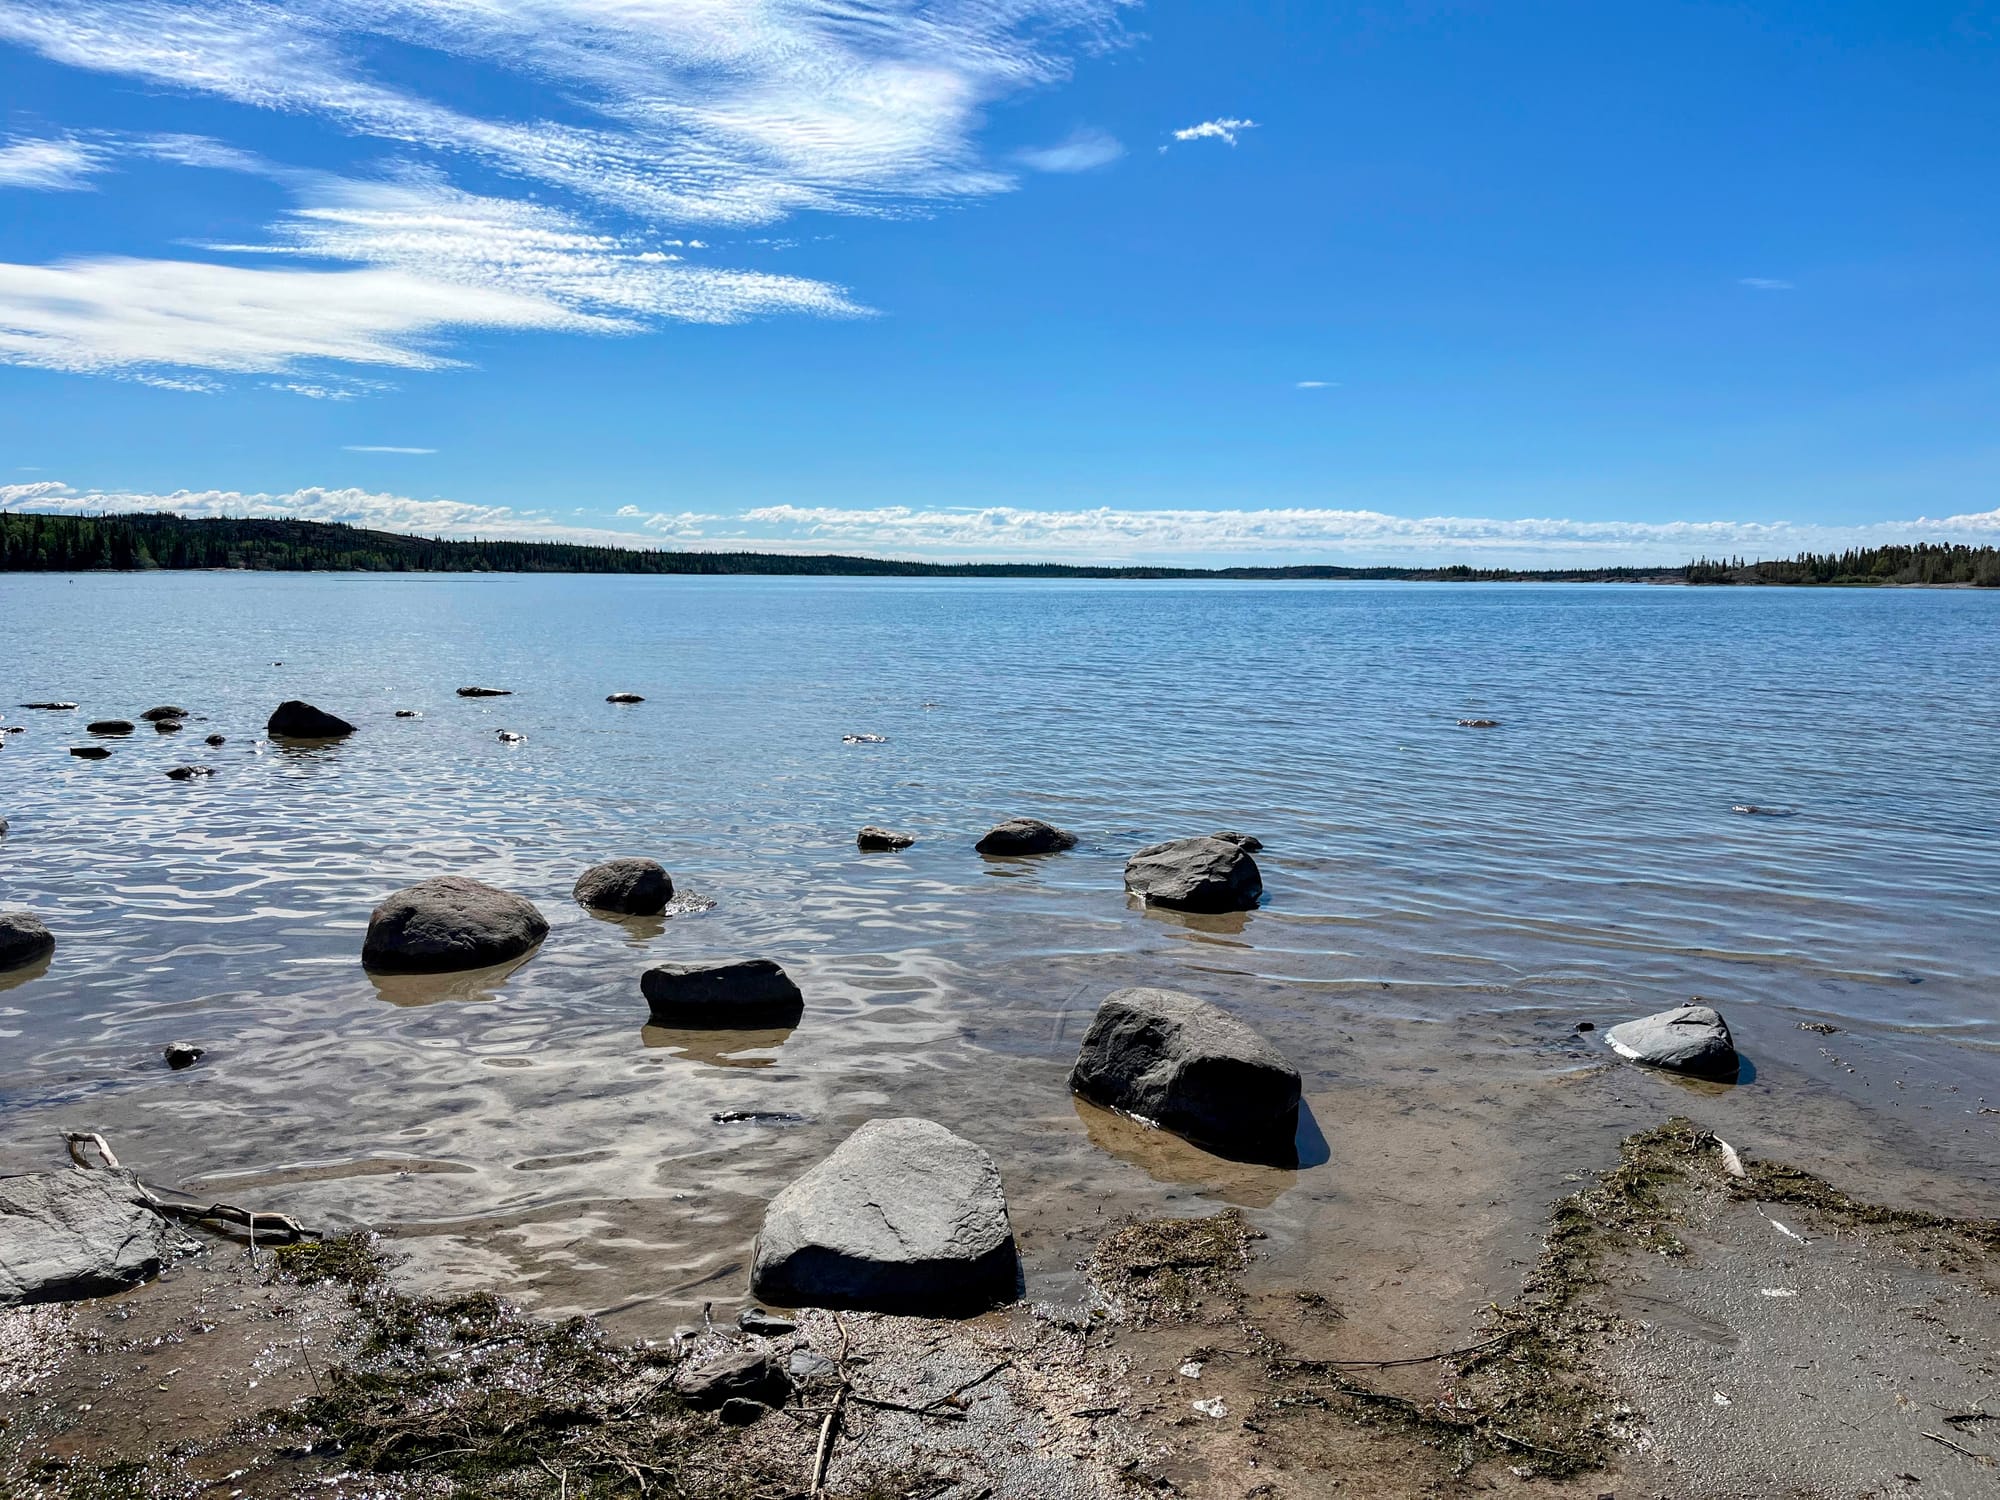 Large scattered rocks along a shoreline.